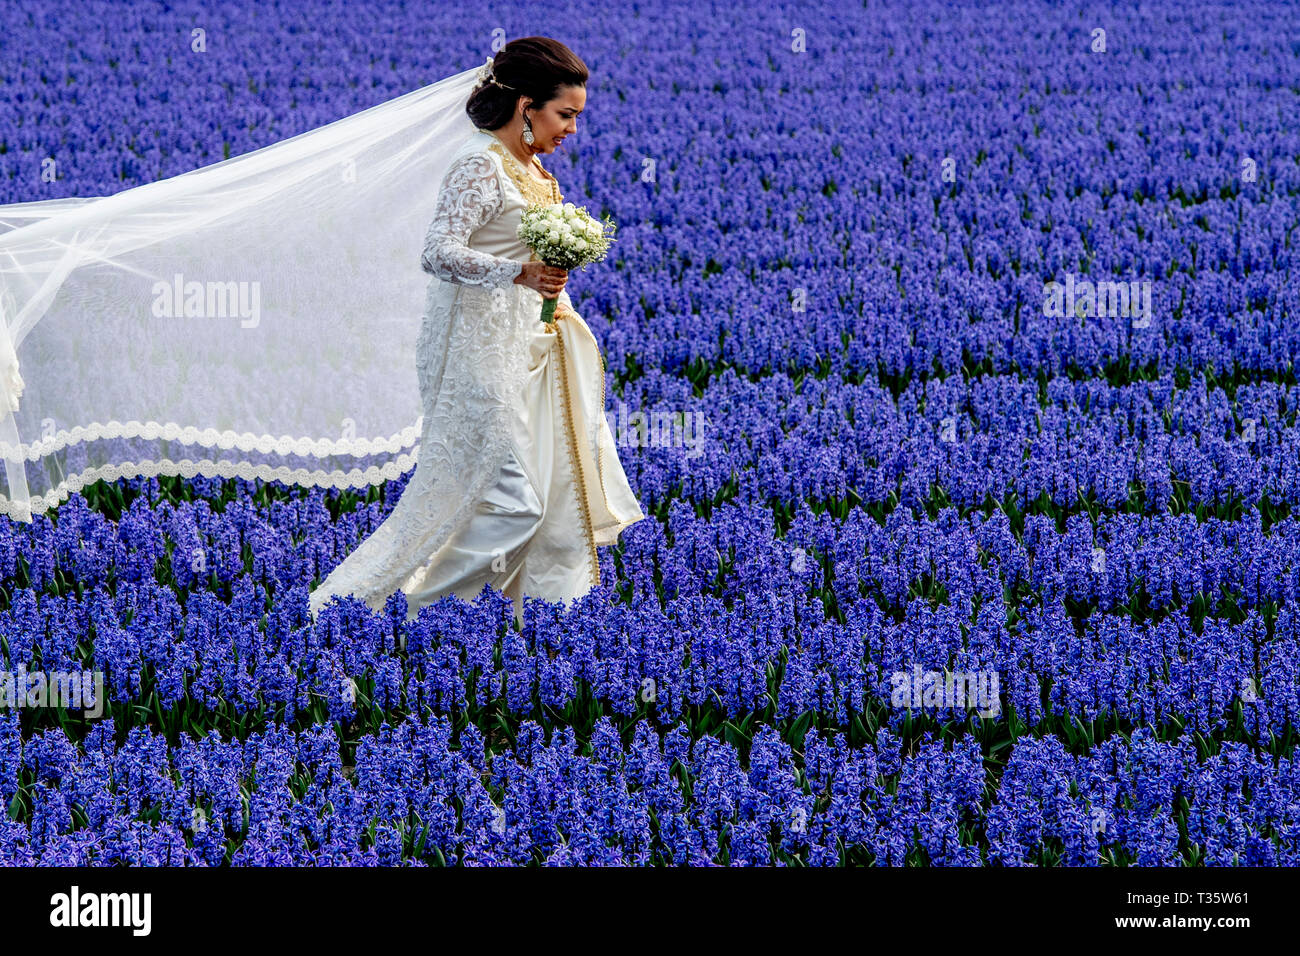 LISSE - een bruidspaar trouwen tulpenvelden staan in de bloei tulp tulpen , roos , rozen , bollenvelden staan in de bloei tijdens de lente bloembollen Stock Photo